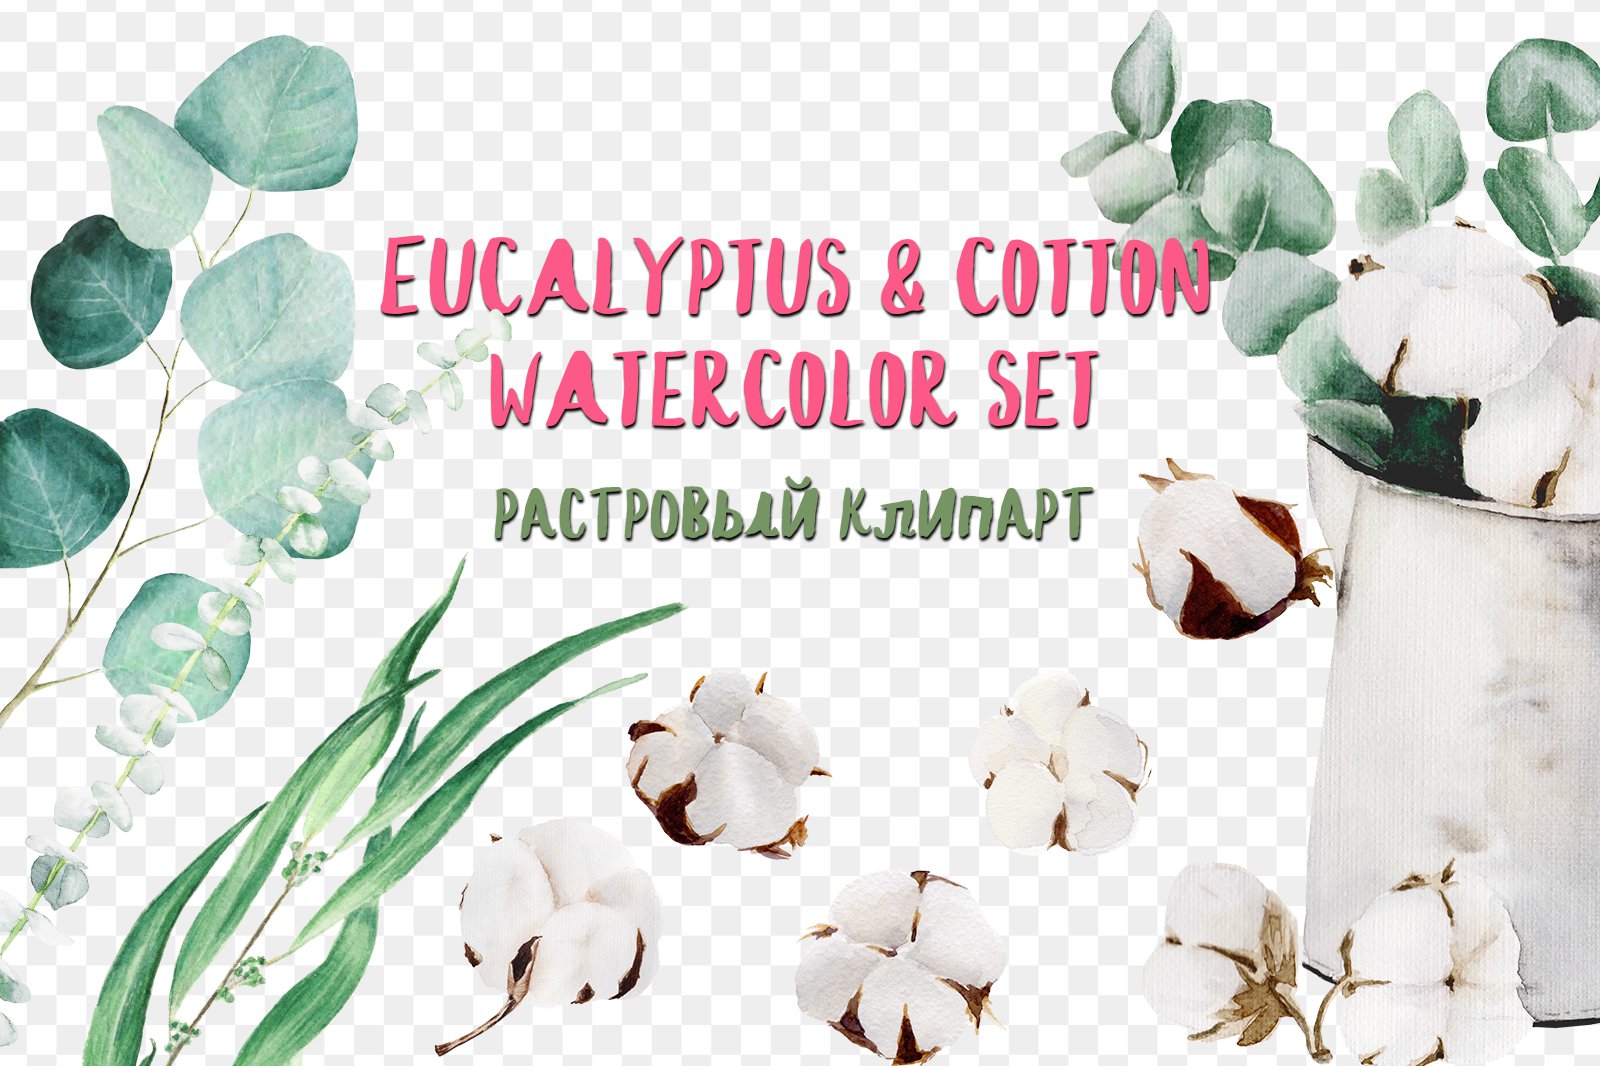 Eucalyptus & cotton watercolor set хлопок png скачать